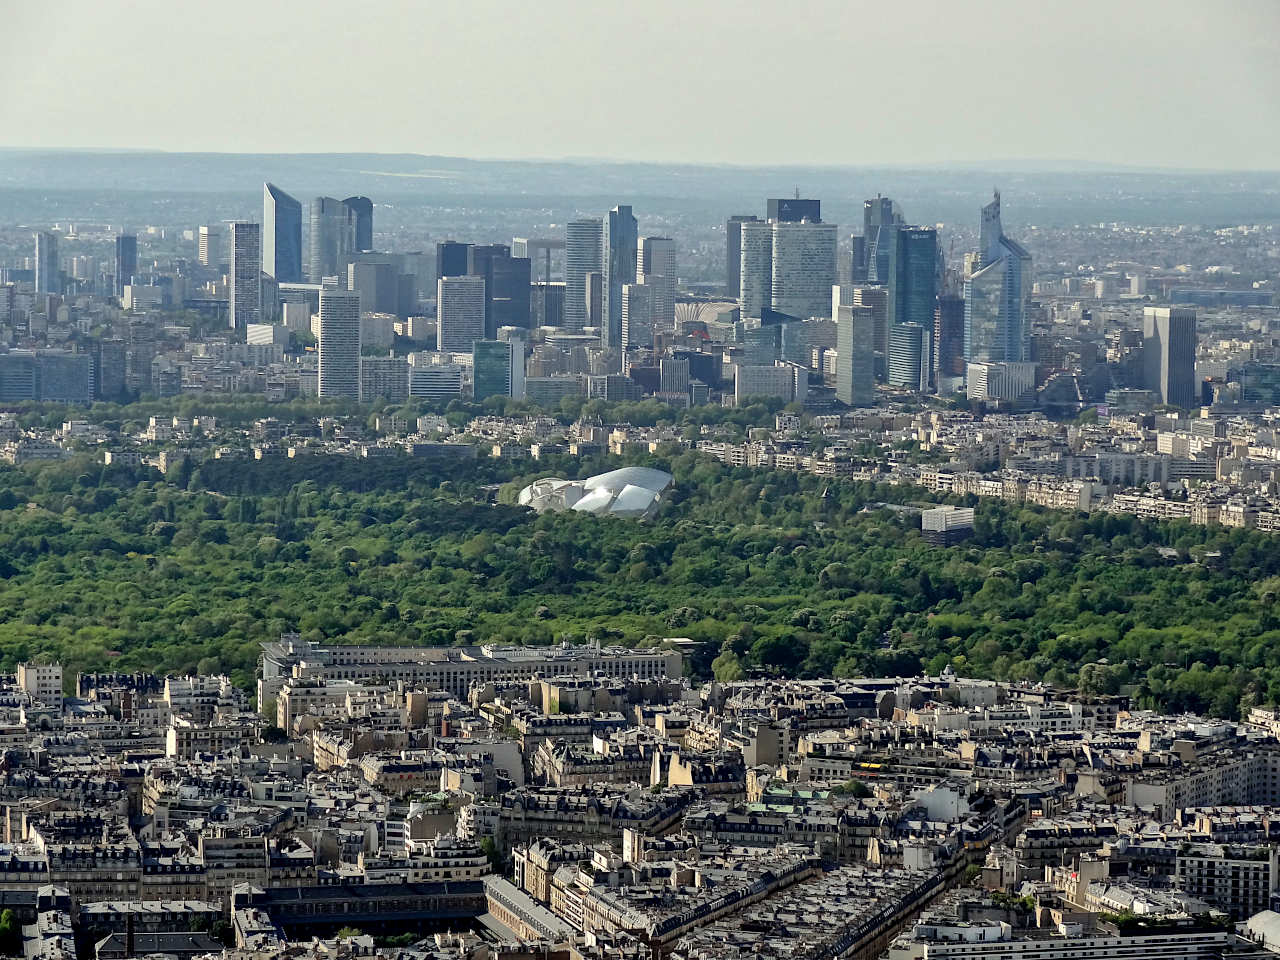 Fondation Vuitton et La Défense vus depuis la tour Eiffel